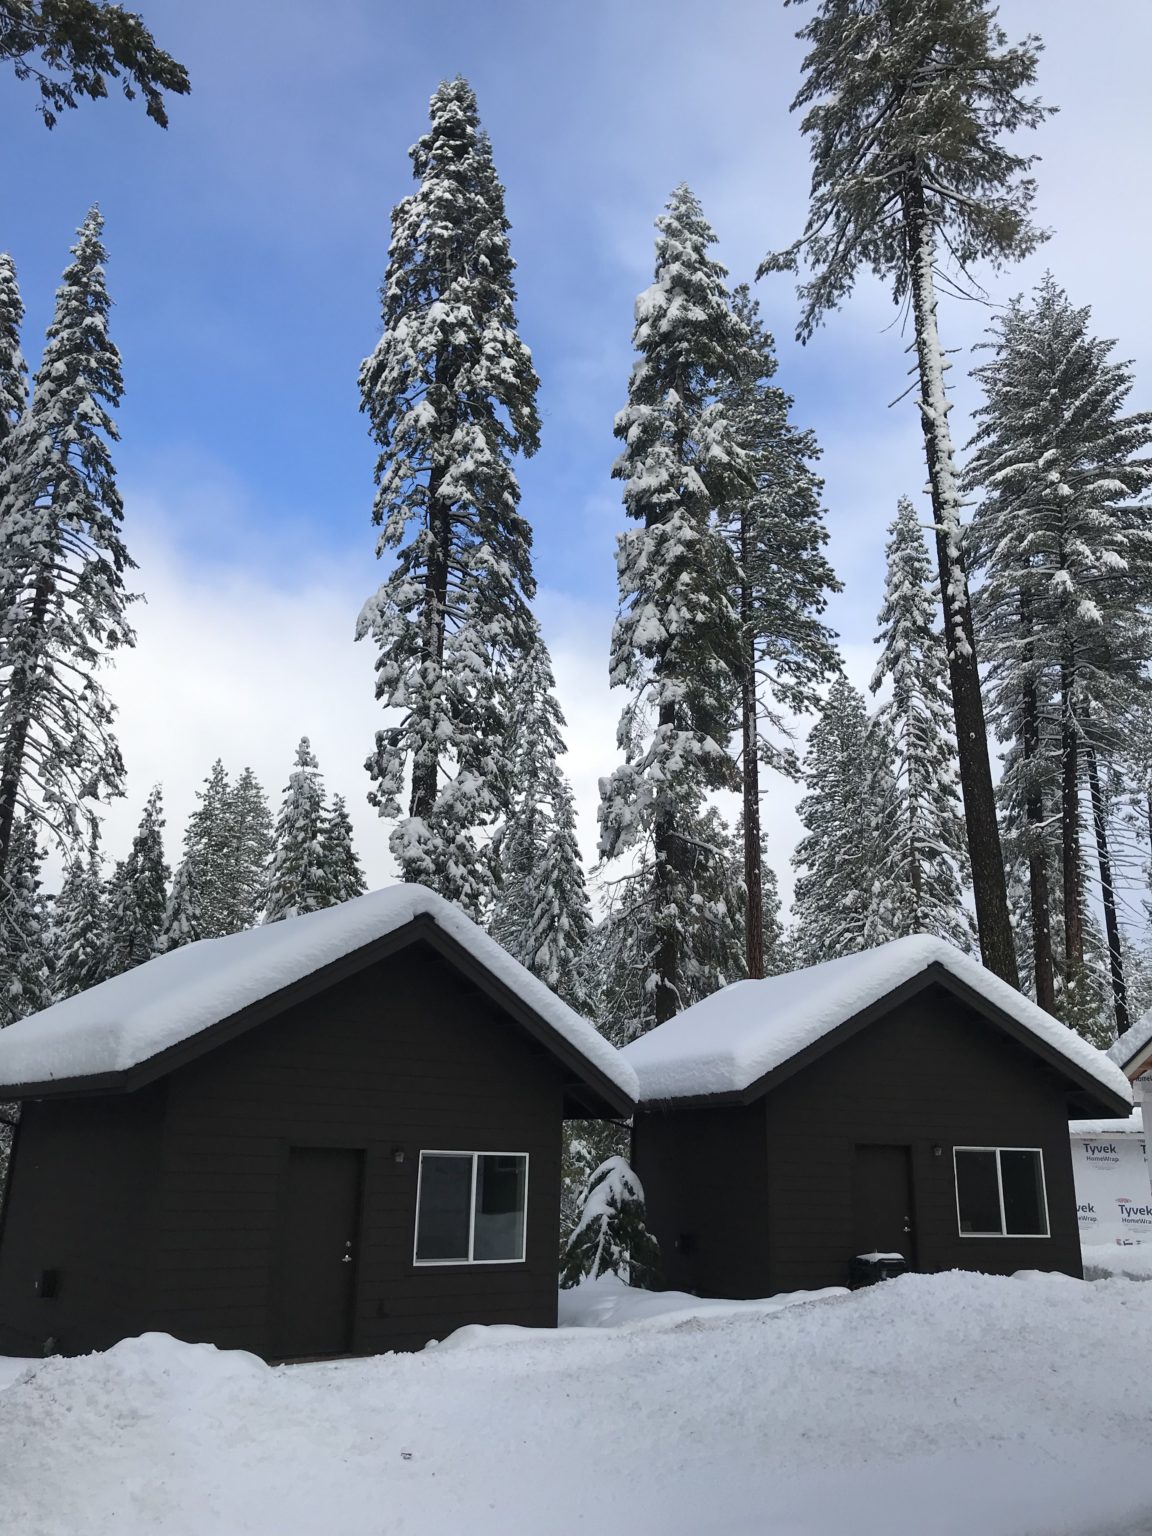 Oski cabin in snow